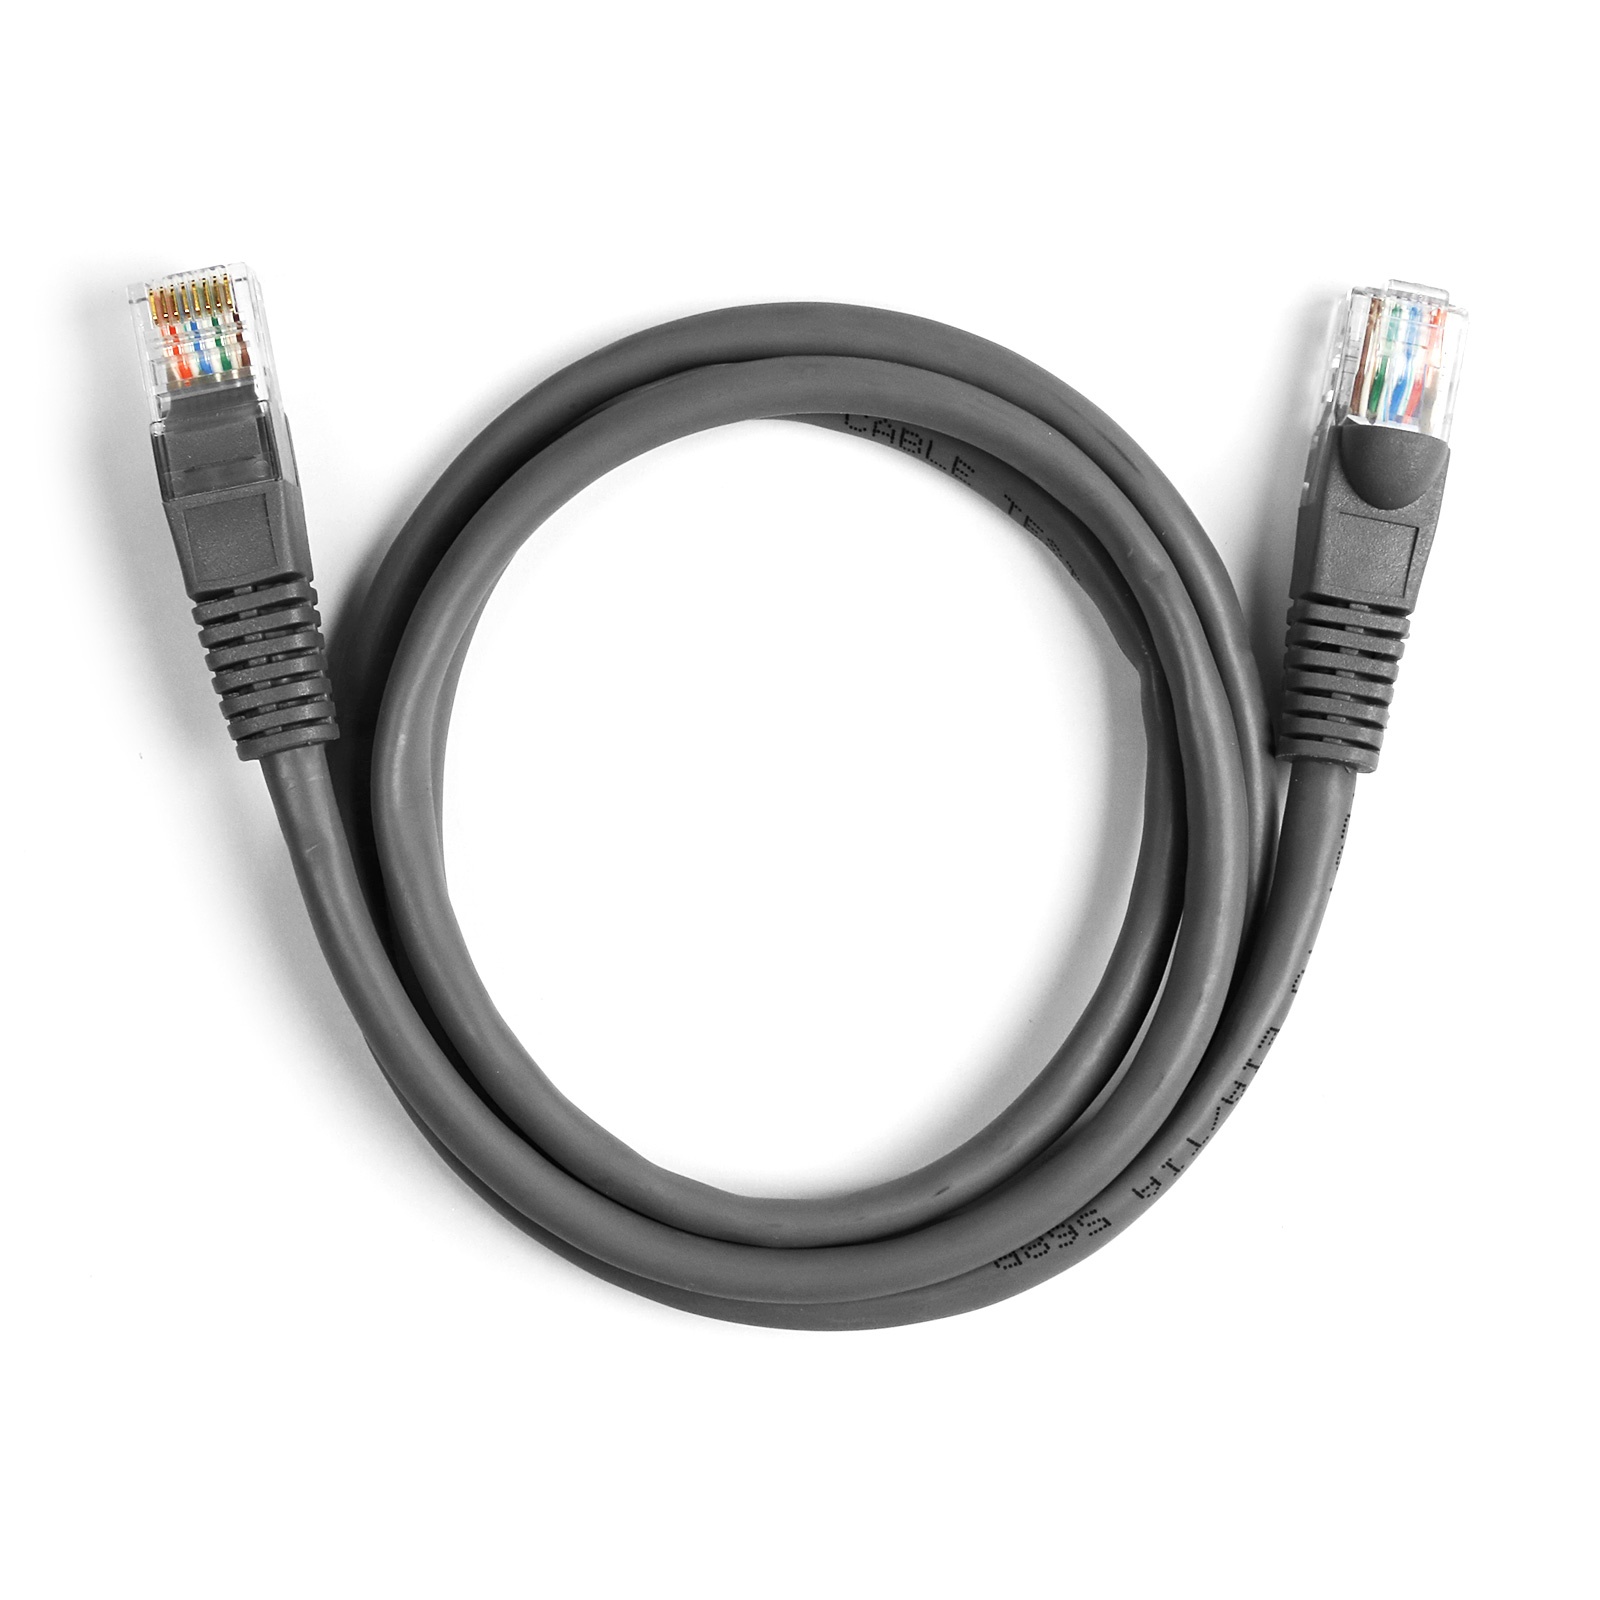 EKON UTP patch cable Cat 5e grey color, RJ45 connector, cable length 10 m. 100 MHz. Copper conductor